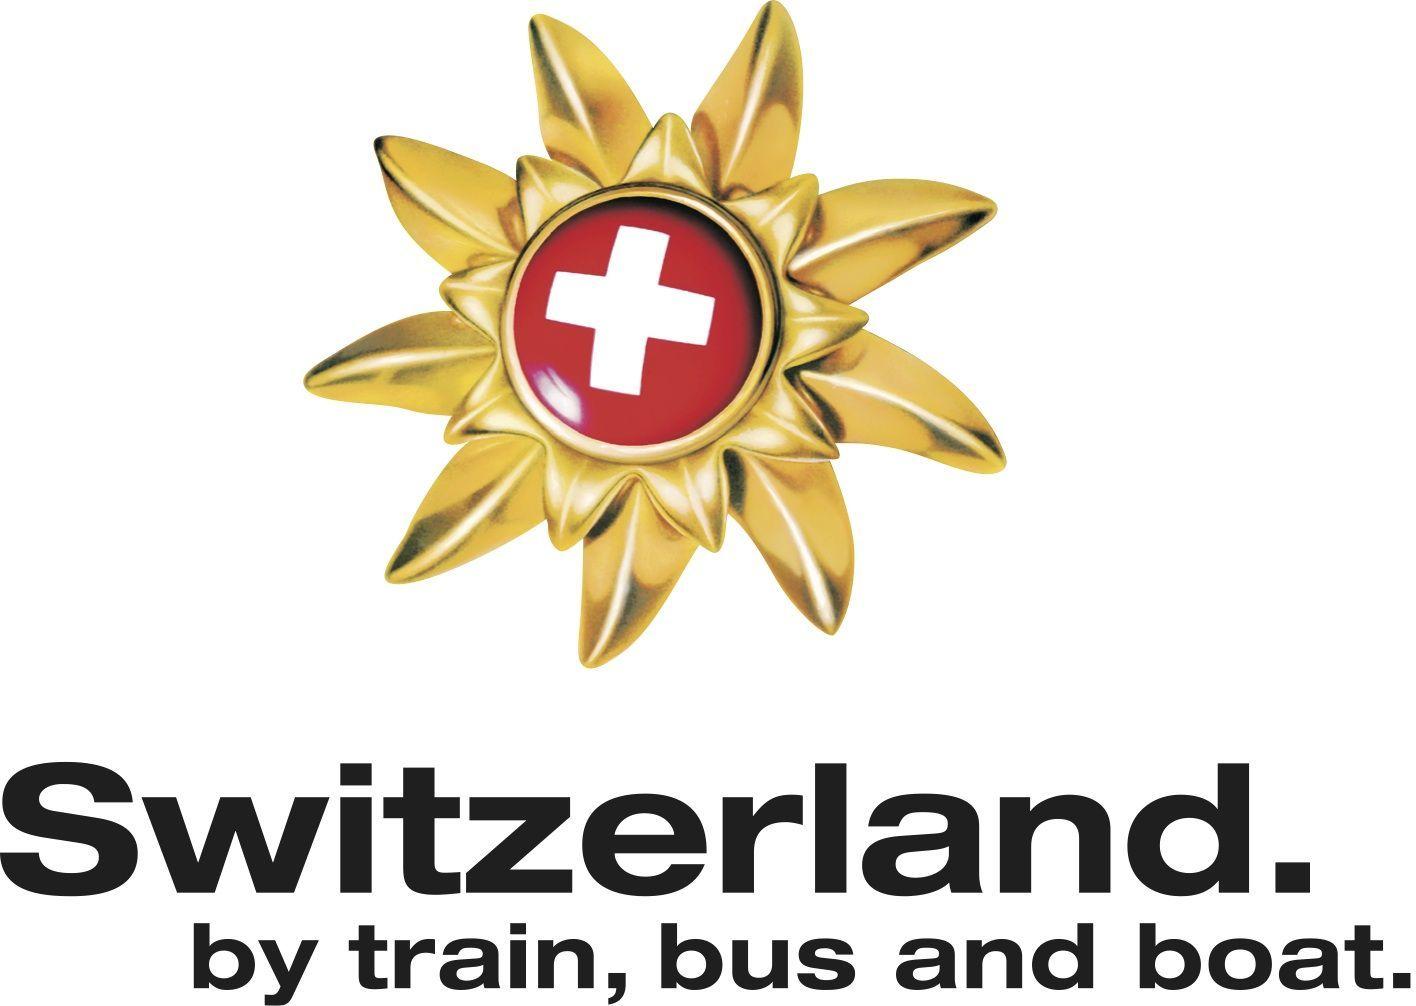 Switzerland Logo - First Swiss Travel Pass SuperStar winners announced ·ETB Travel News